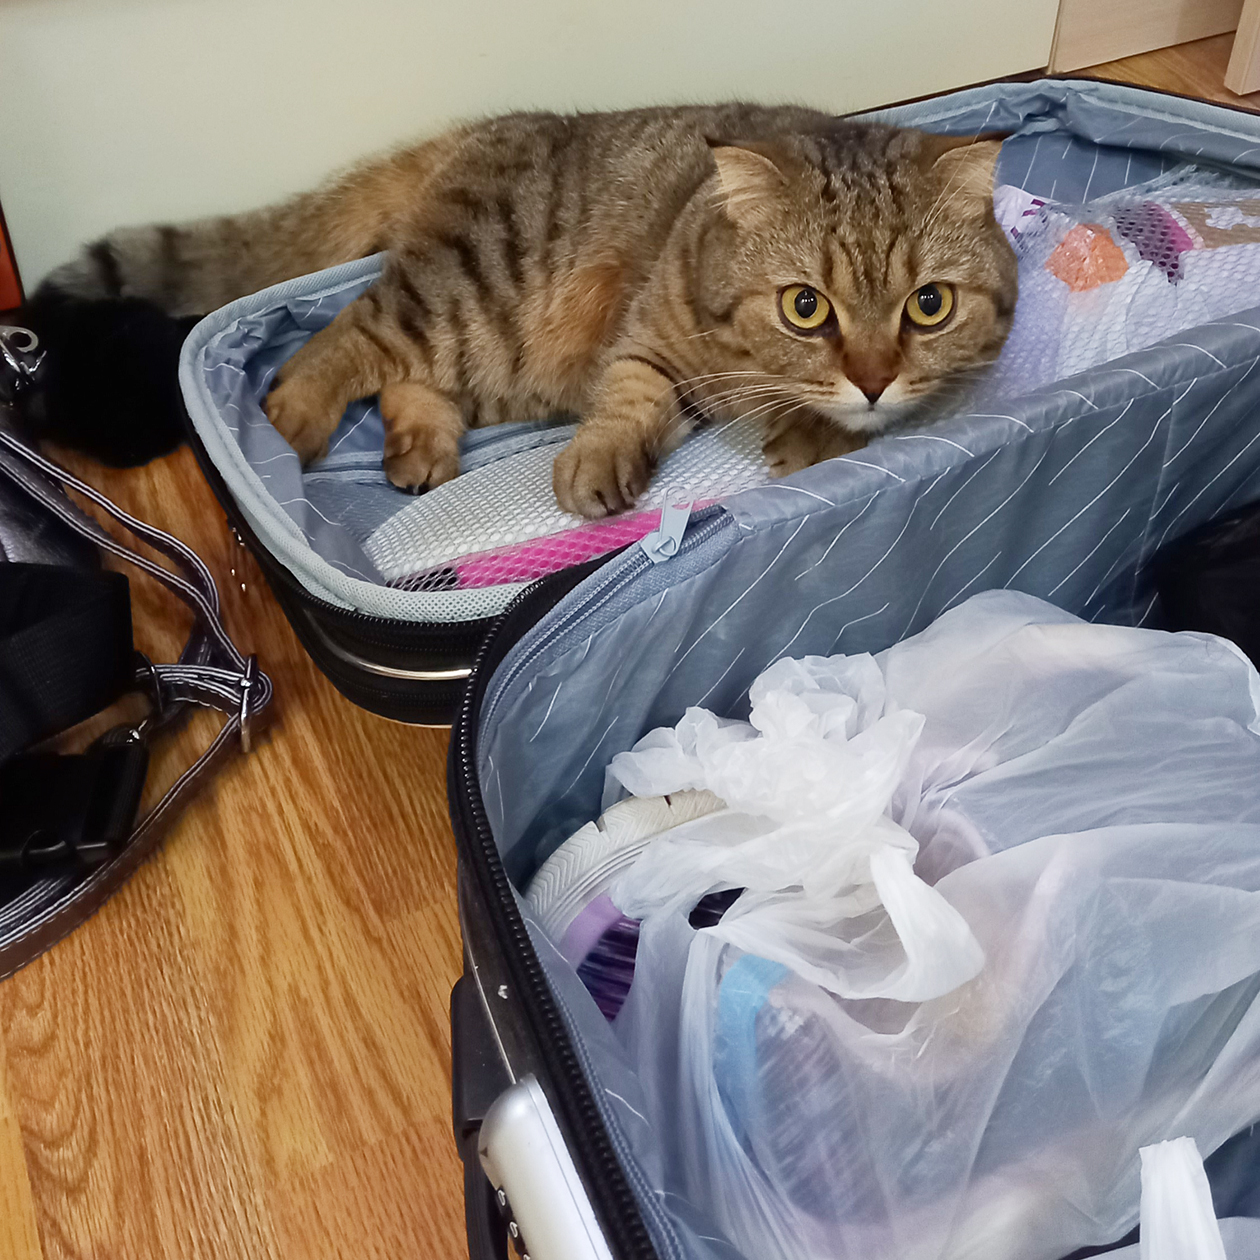 Я следовала рекомендациям и паковала основные вещи в один чемодан. Наша кошка Бусинка тоже претендовала на место в нем, но конкурсный отбор в «Сириус» не прошла. Пришлось оставить ее дома